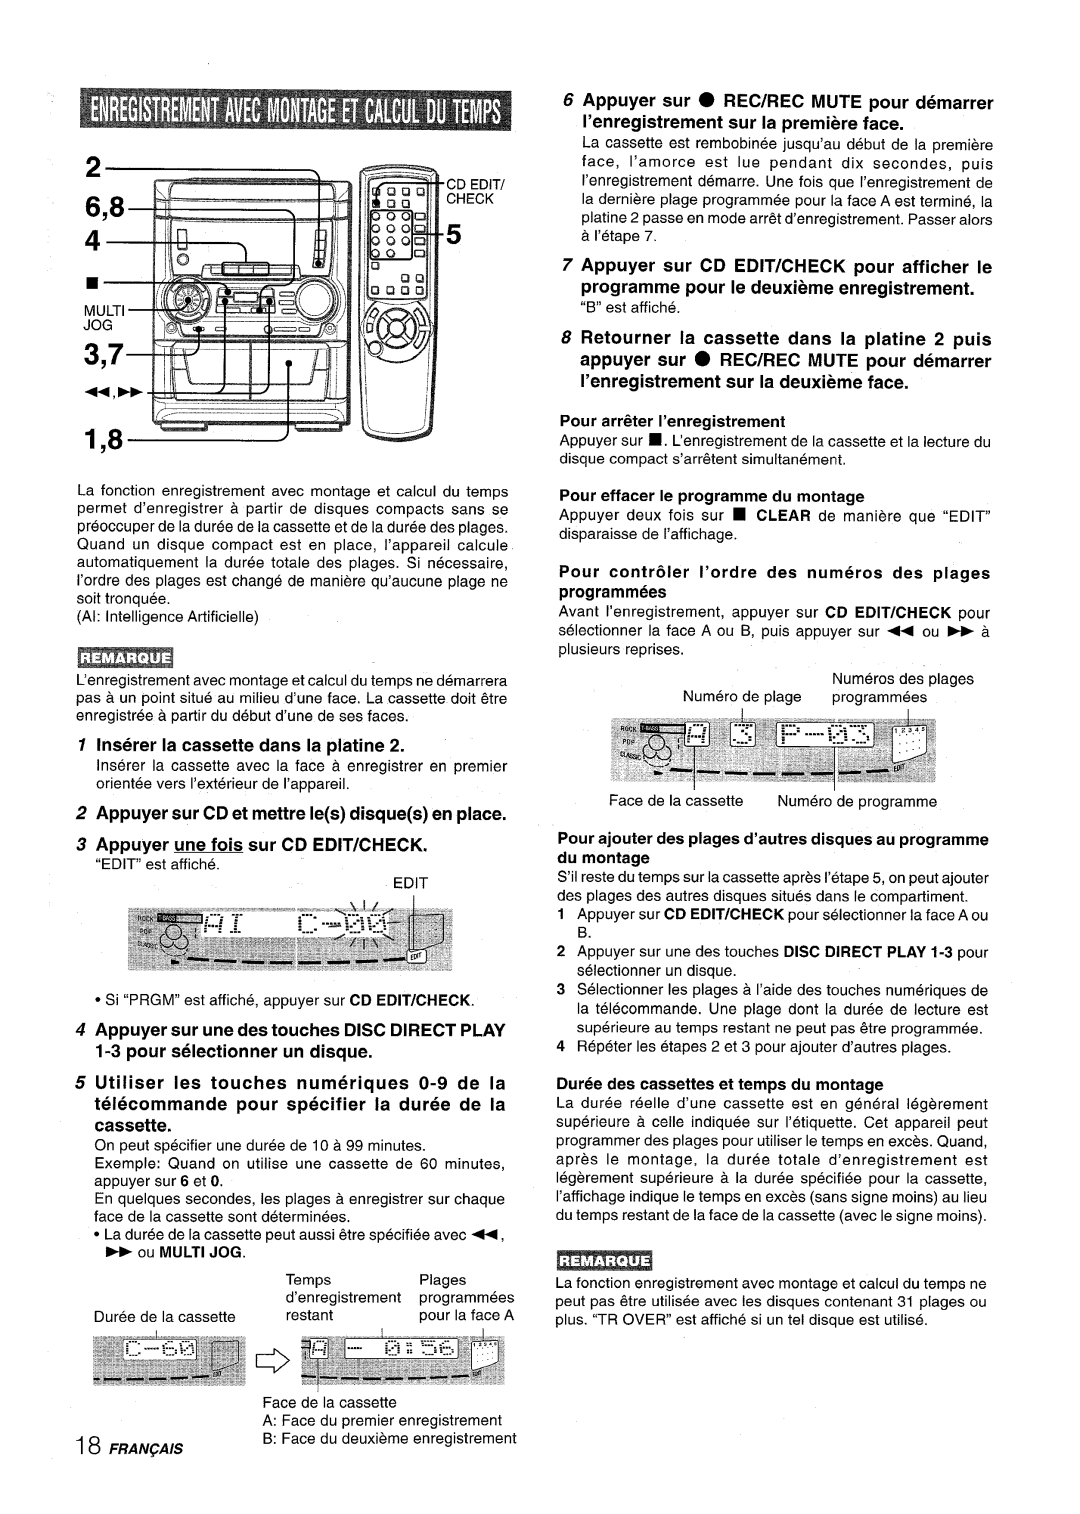 Aiwa SX-C605 manual 1,8 ‘“””-”--~~, Inserer la cassette clans la platine, Appuyer sur CD et mettre Ies disques en place 